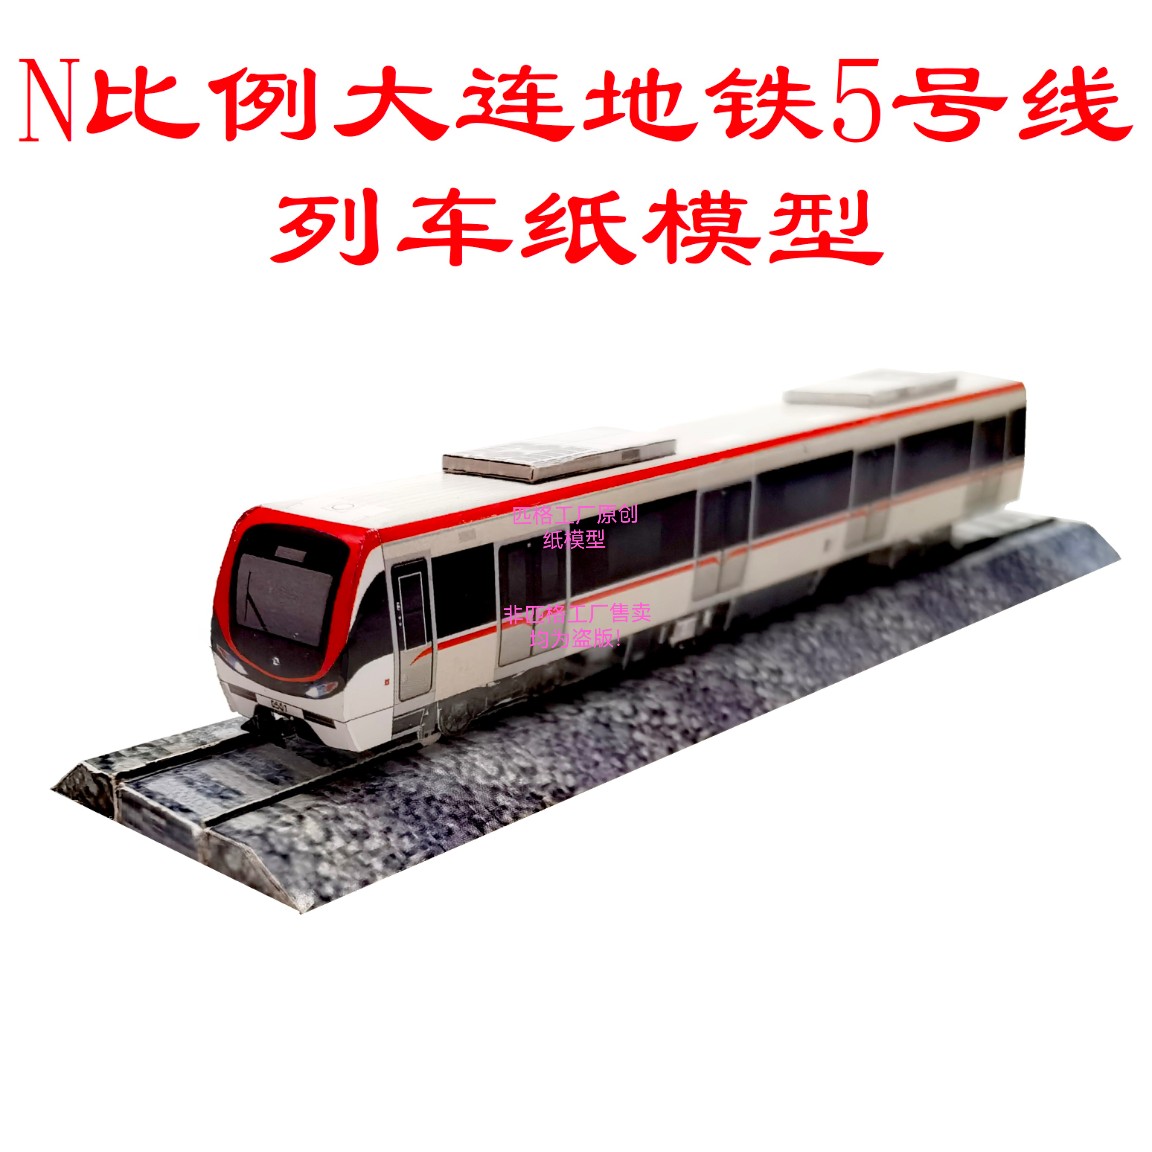 n比例大连地铁5号线地铁列车模型3D纸模DIY手工火车高铁地铁模型